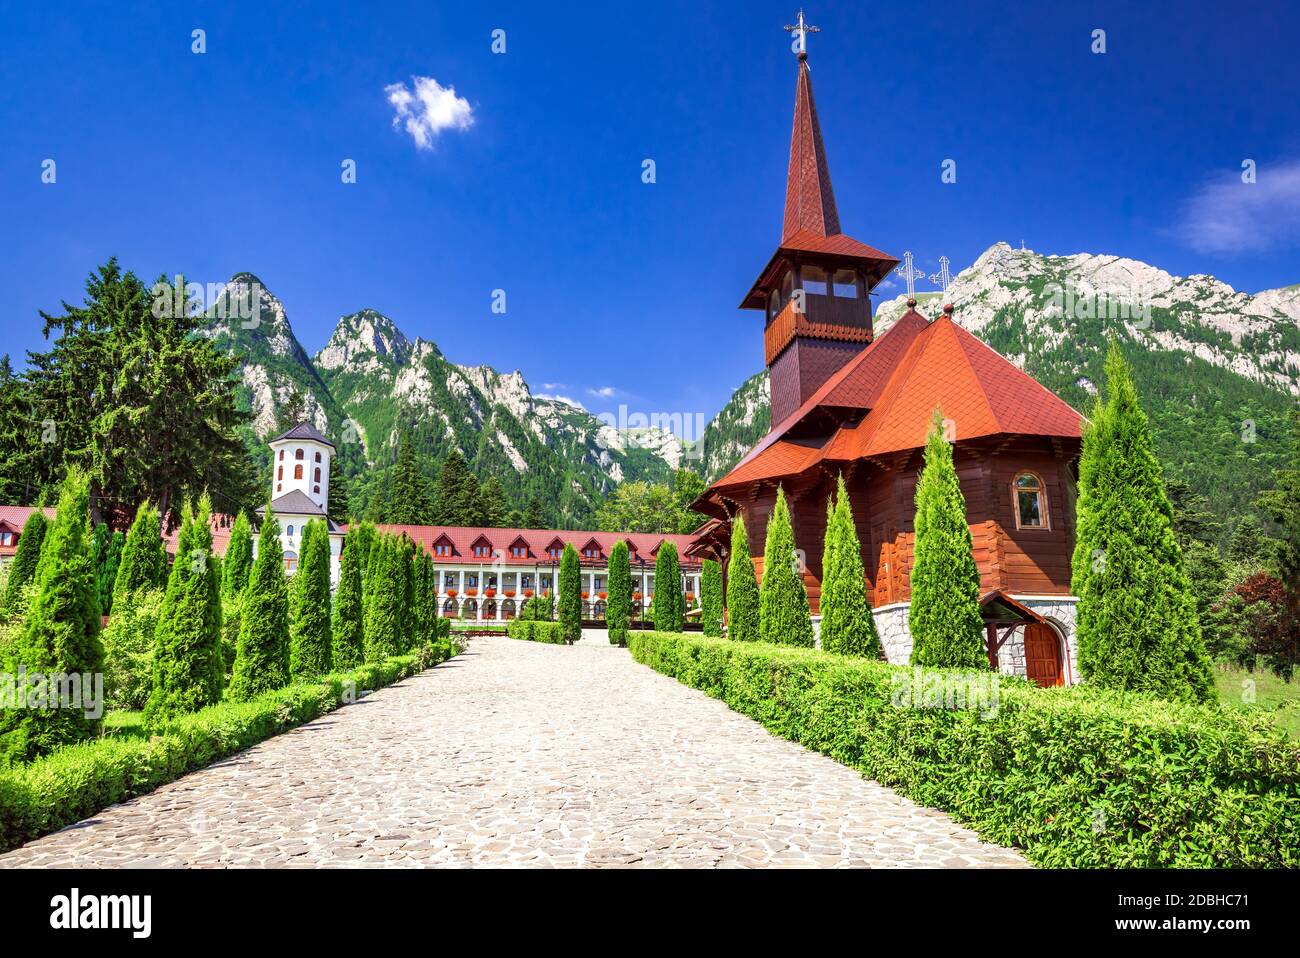 Busteni, Roumanie. Paysage des Carpates avec le monastère de Caraiman et les montagnes Bucegi en Roumanie, la vallée touristique de Prahova. Banque D'Images